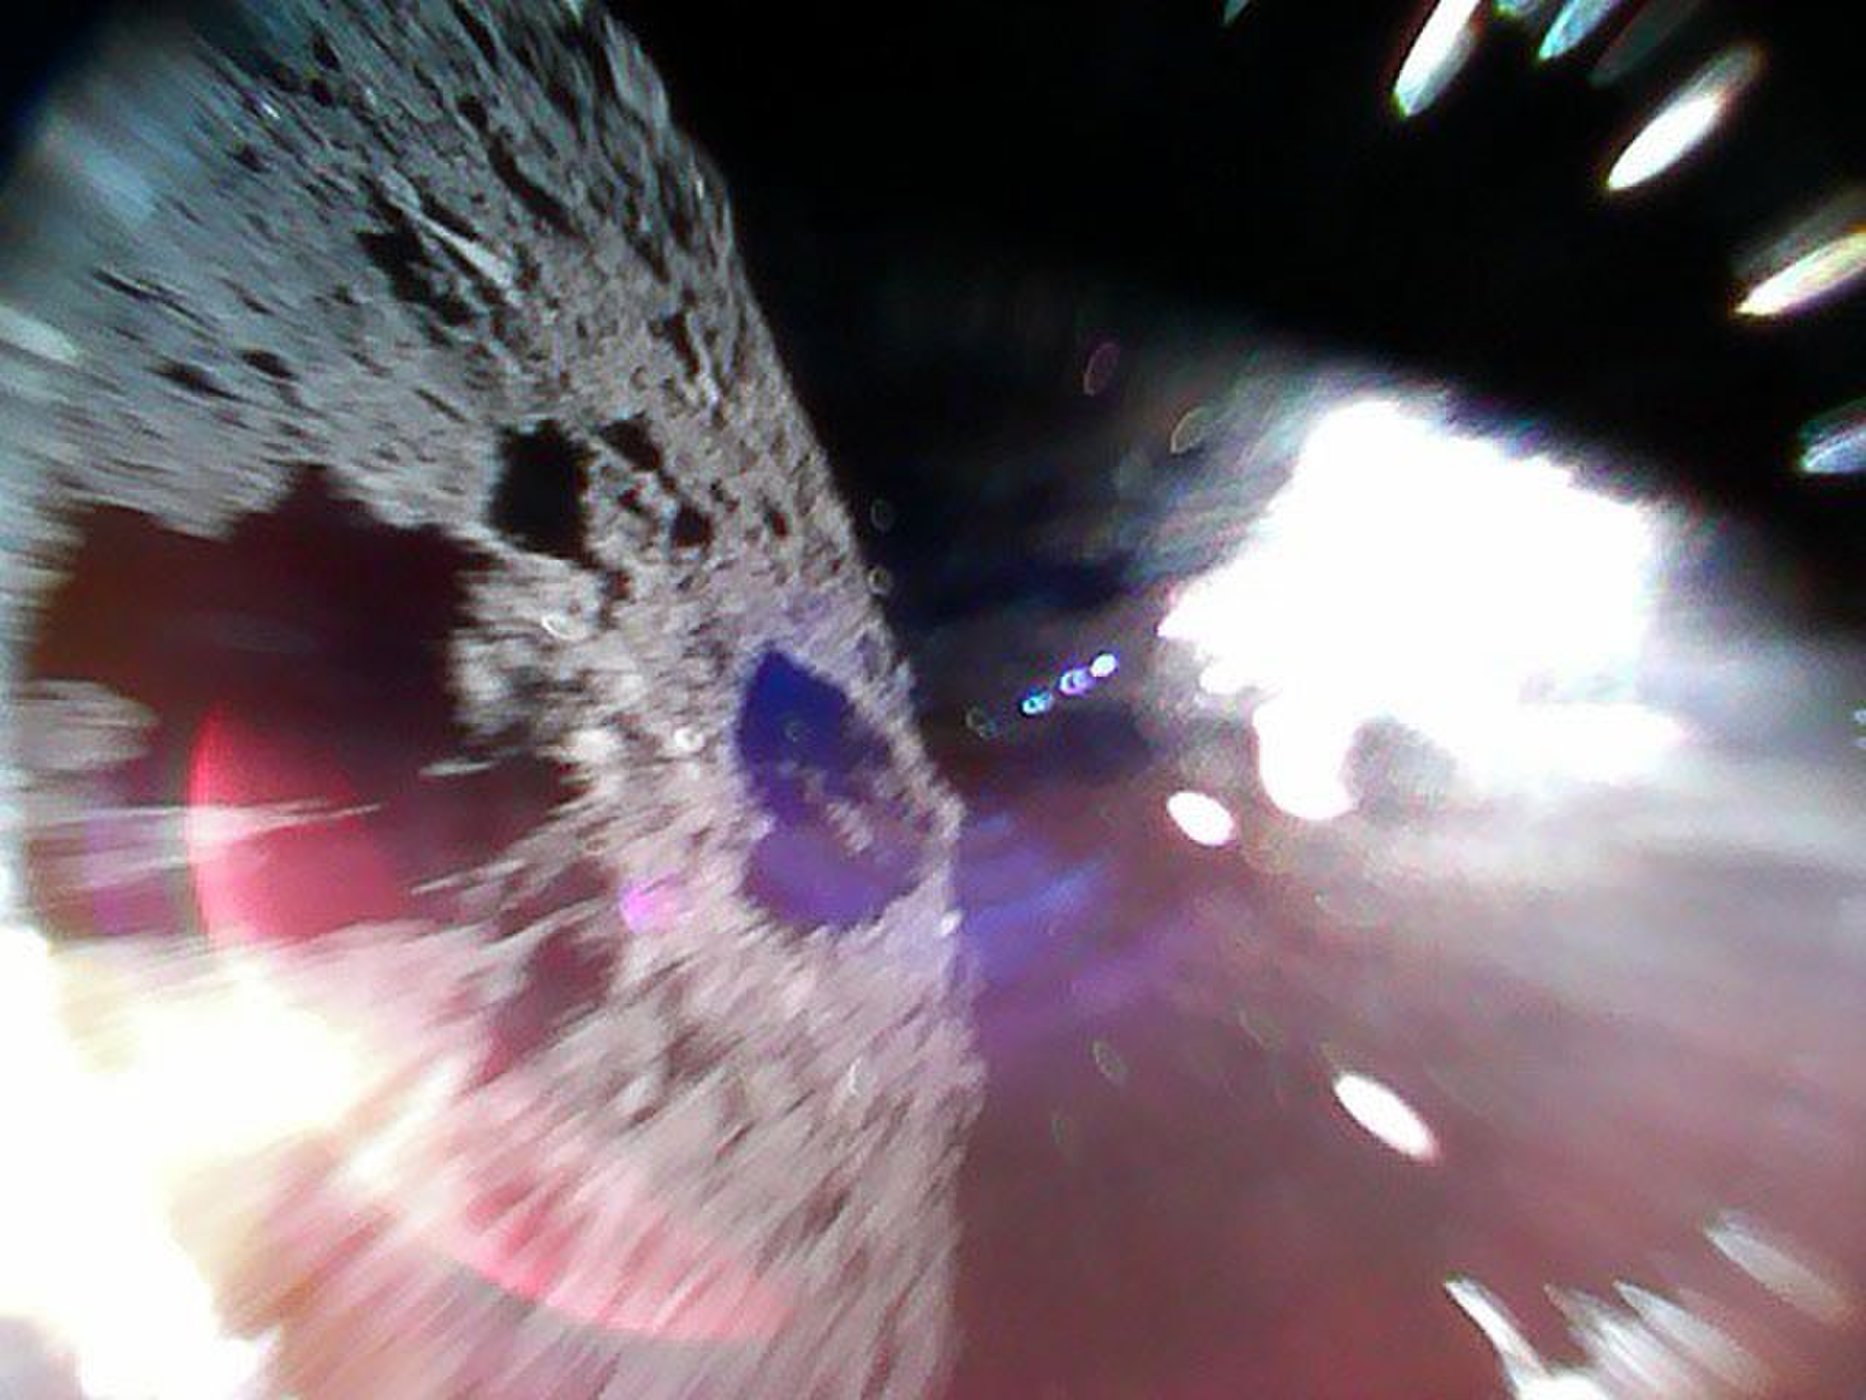 MINERVA-II1A landt op asteroïde Ryugu